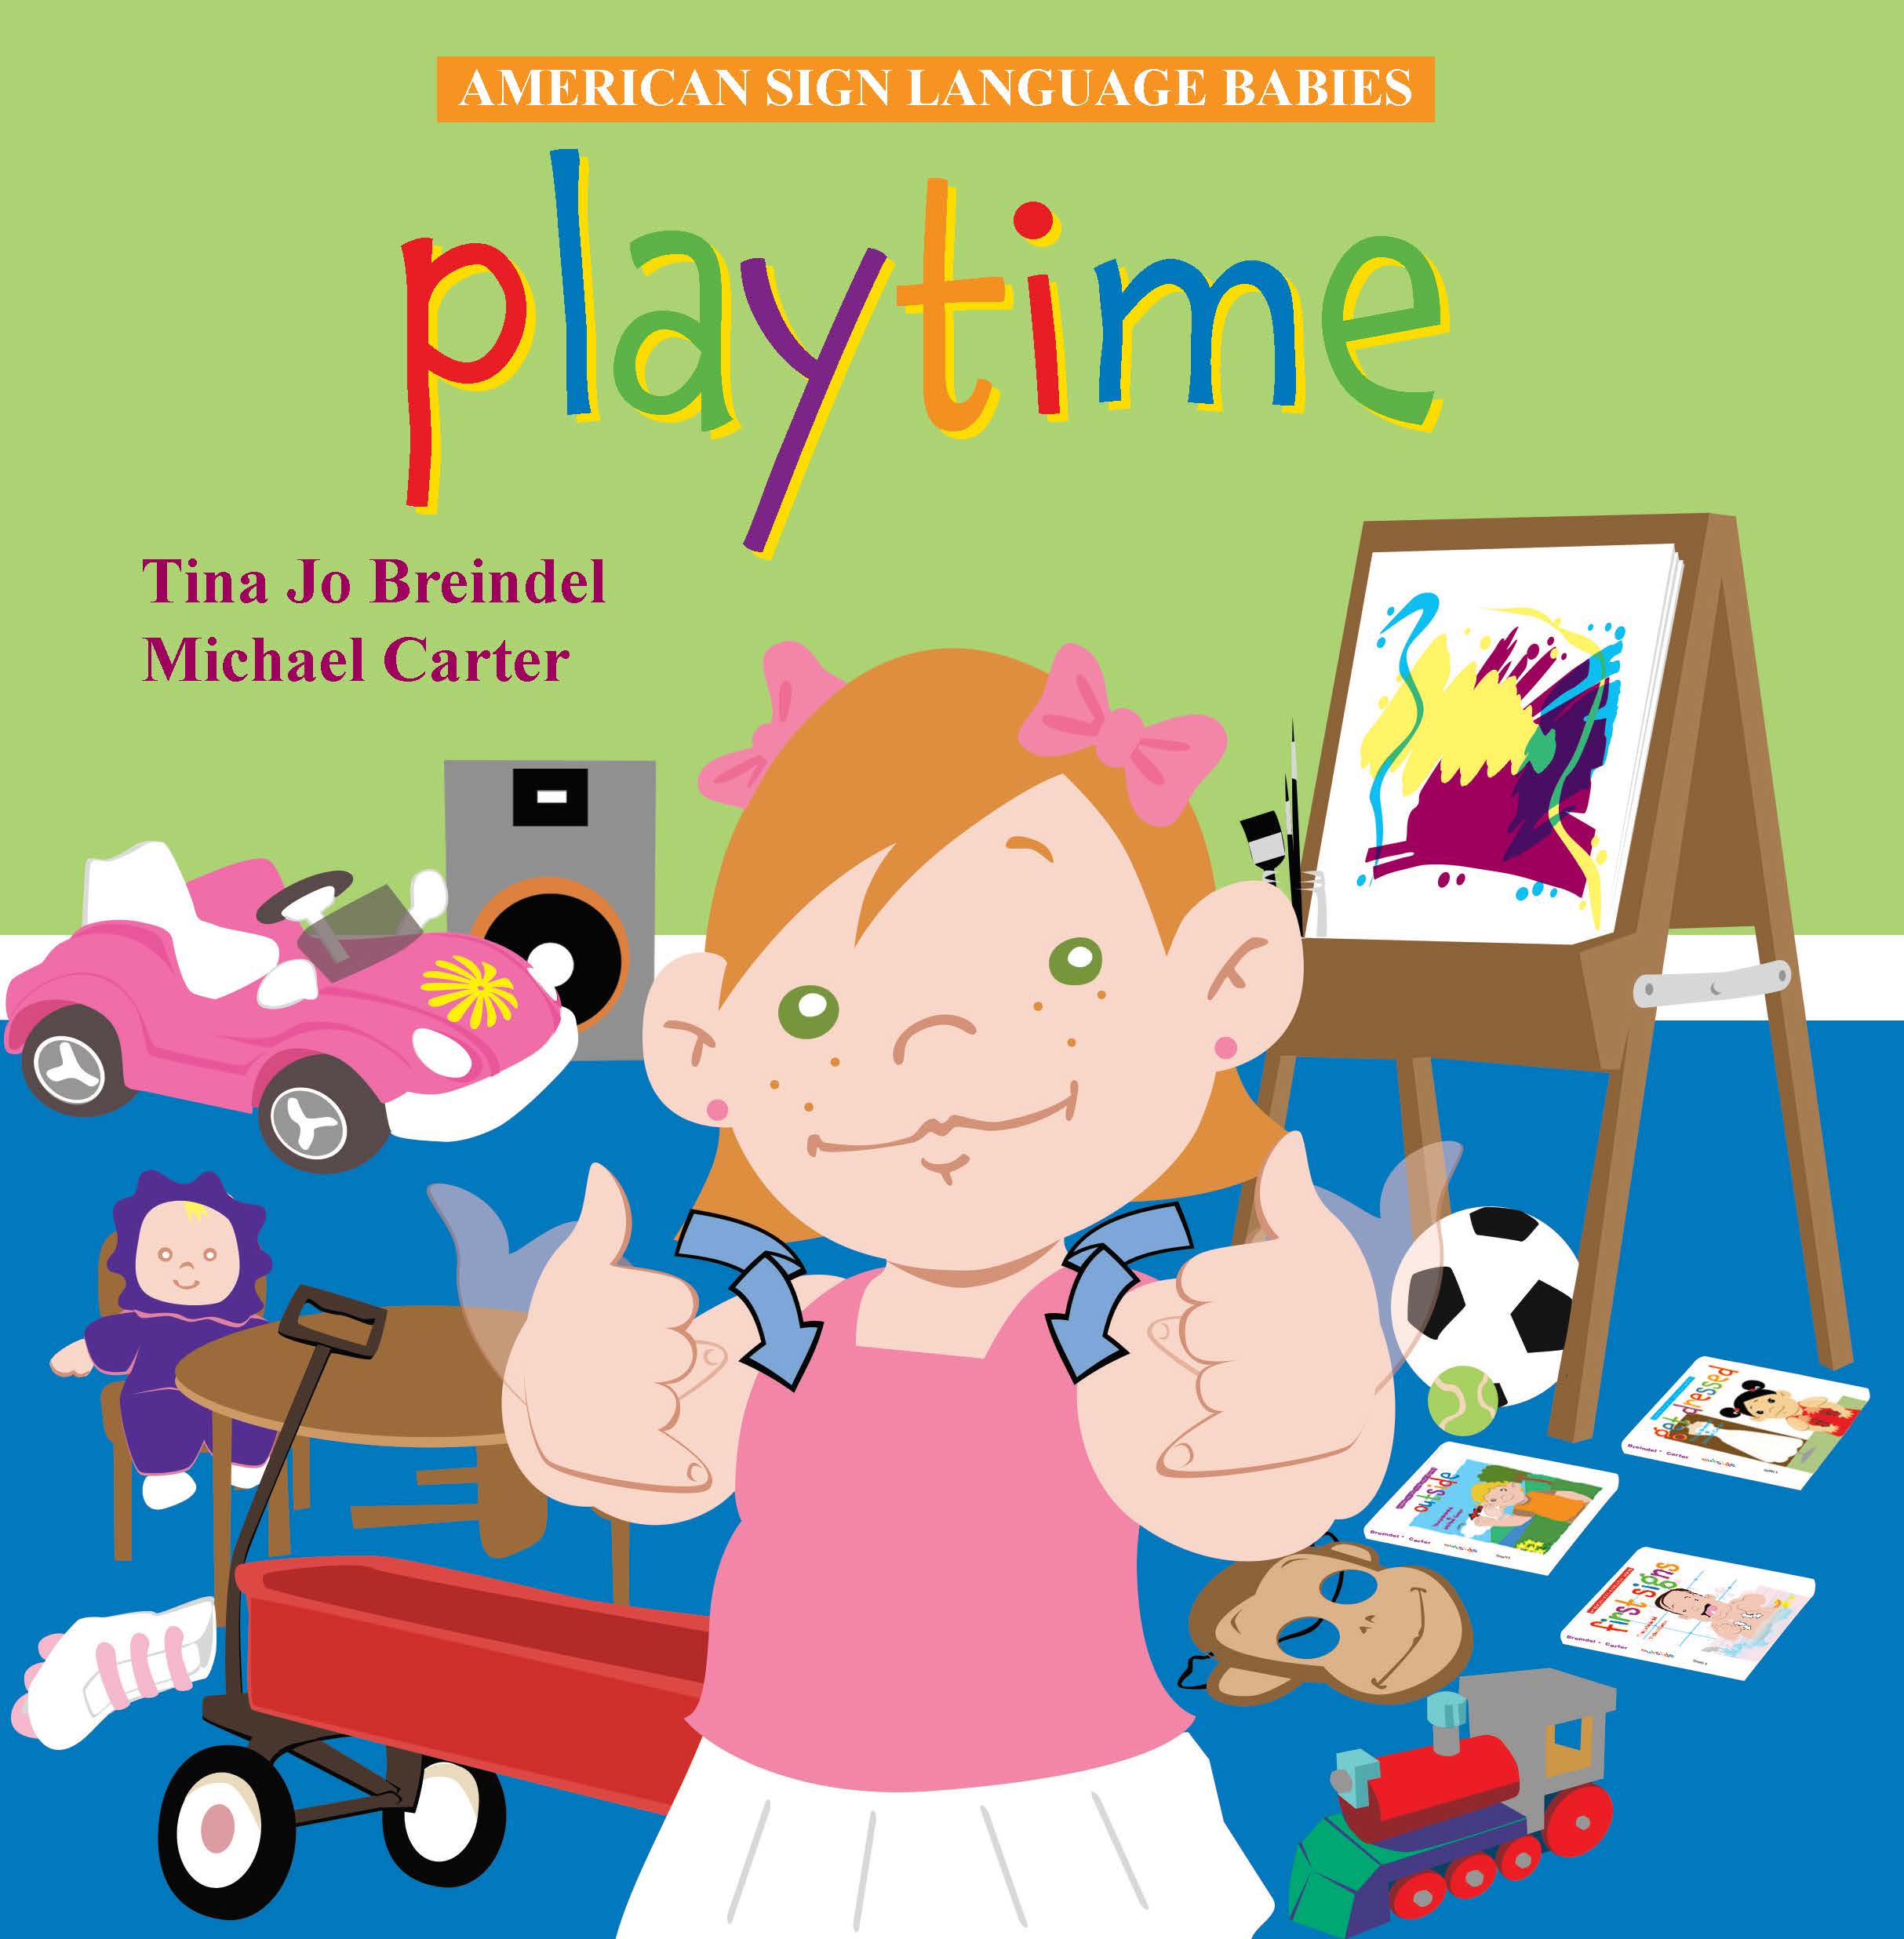 ASL Babies: Playtime